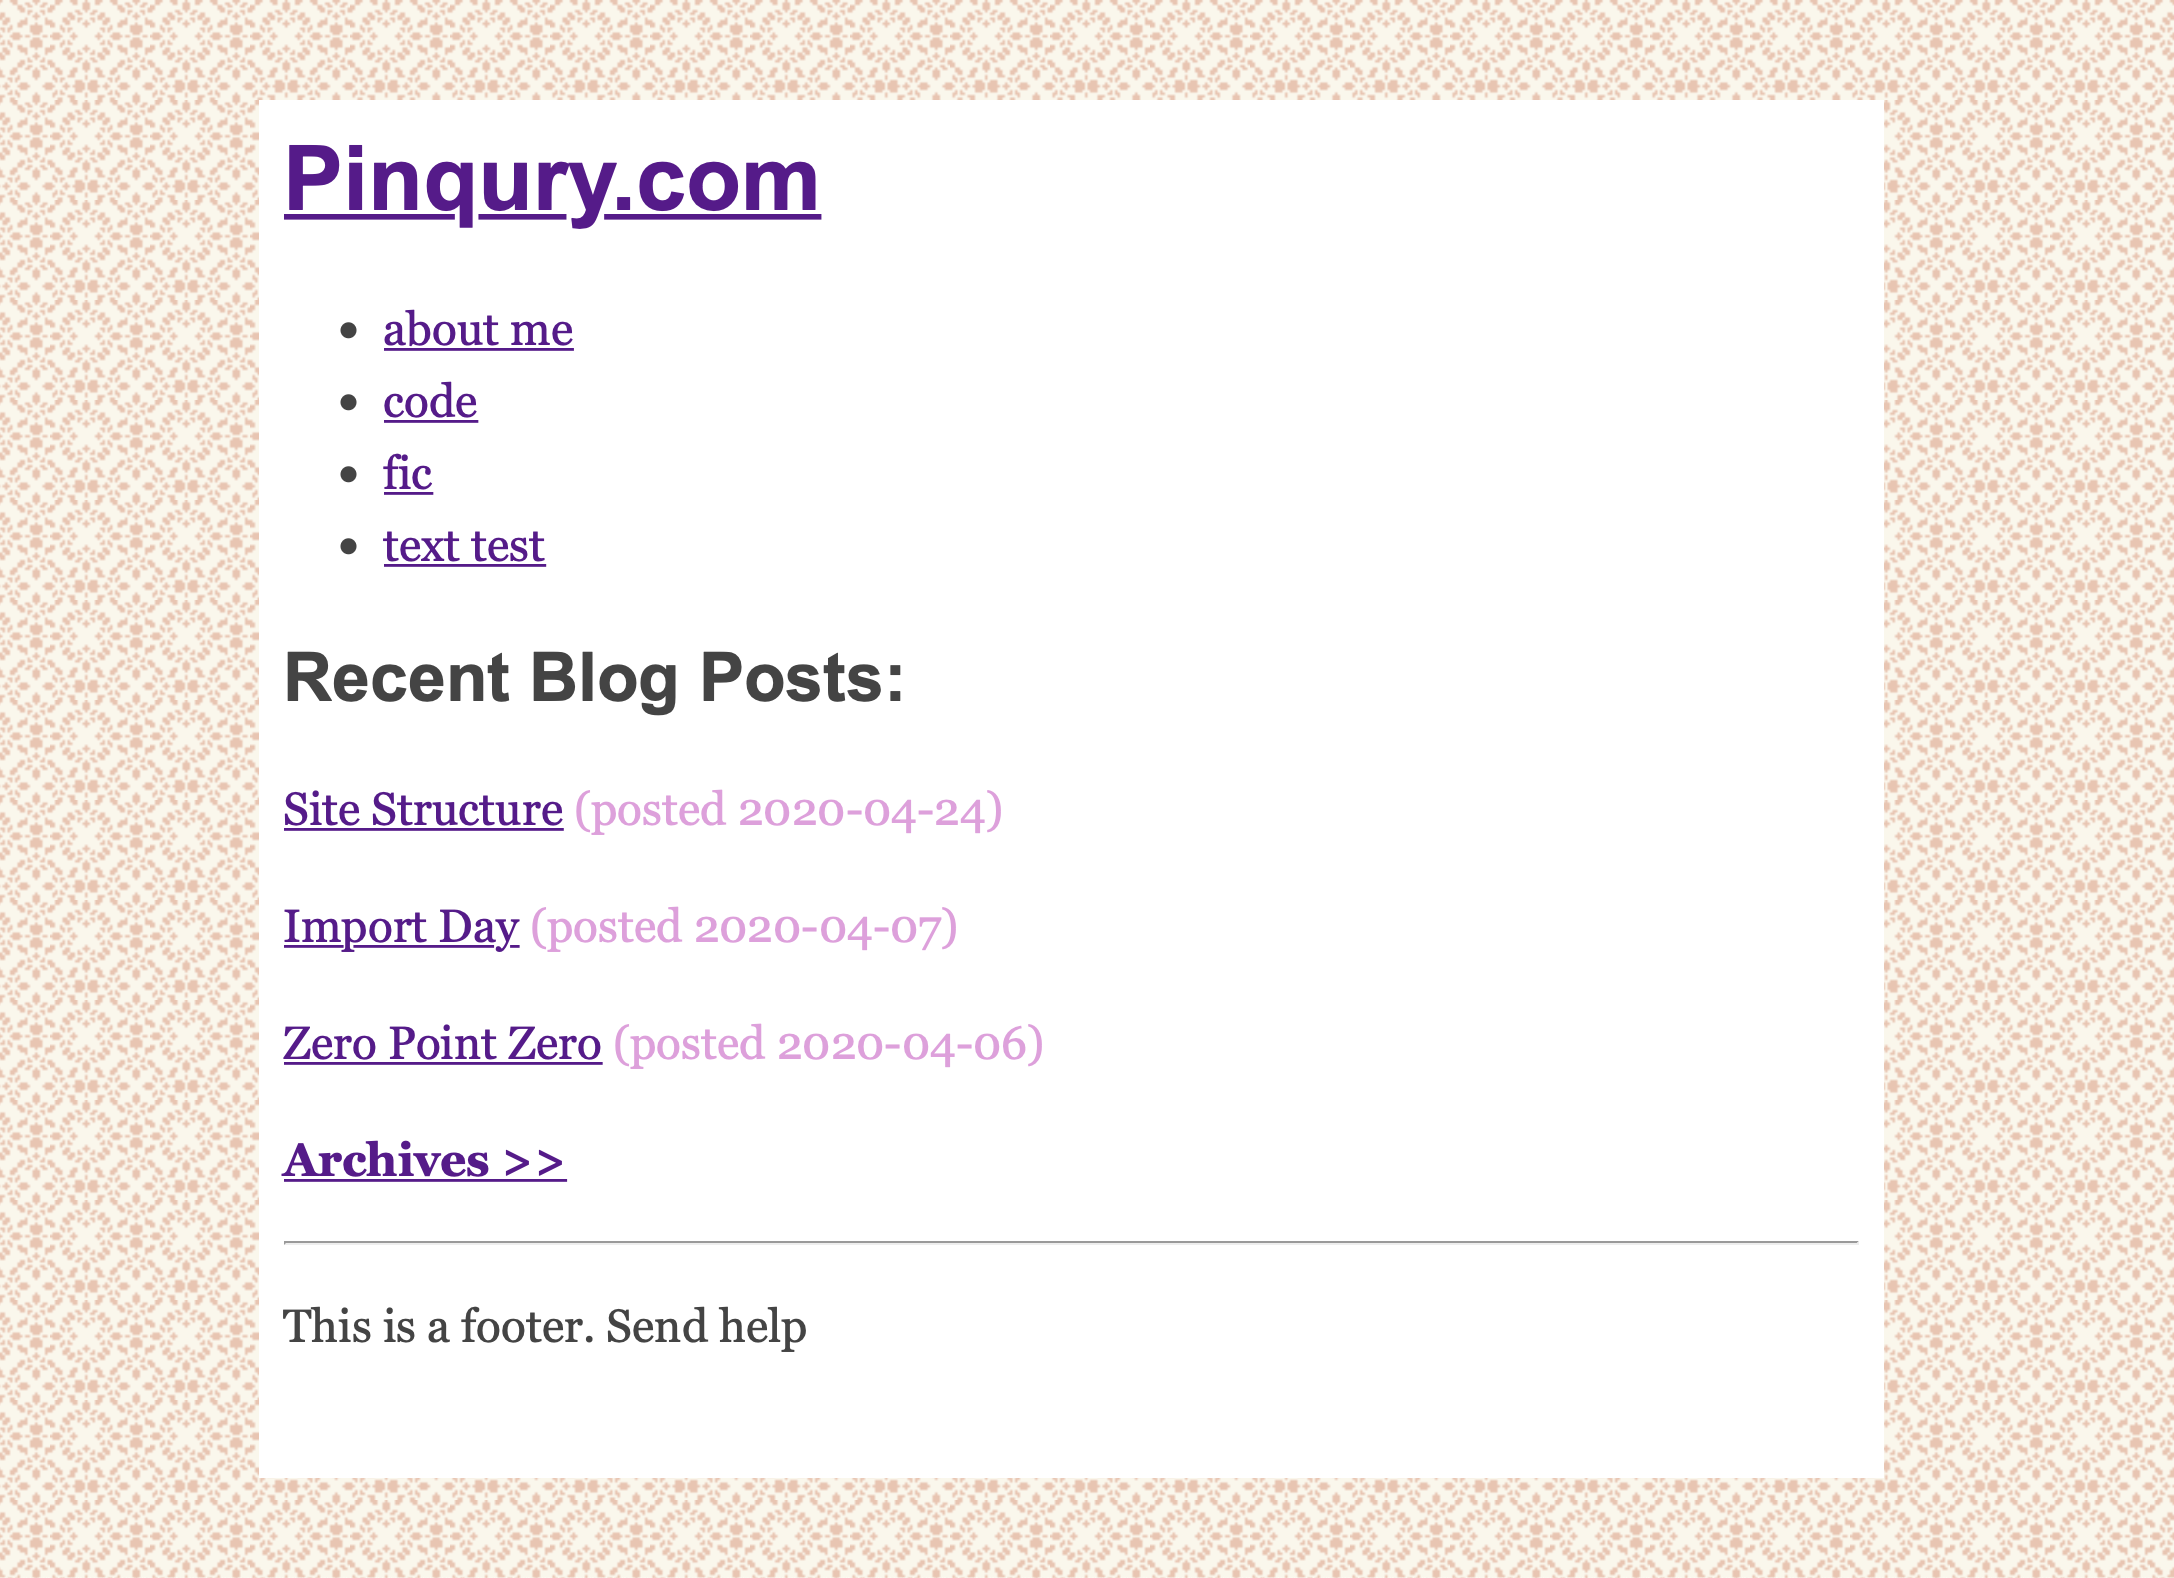 Pinqury.com’s current look